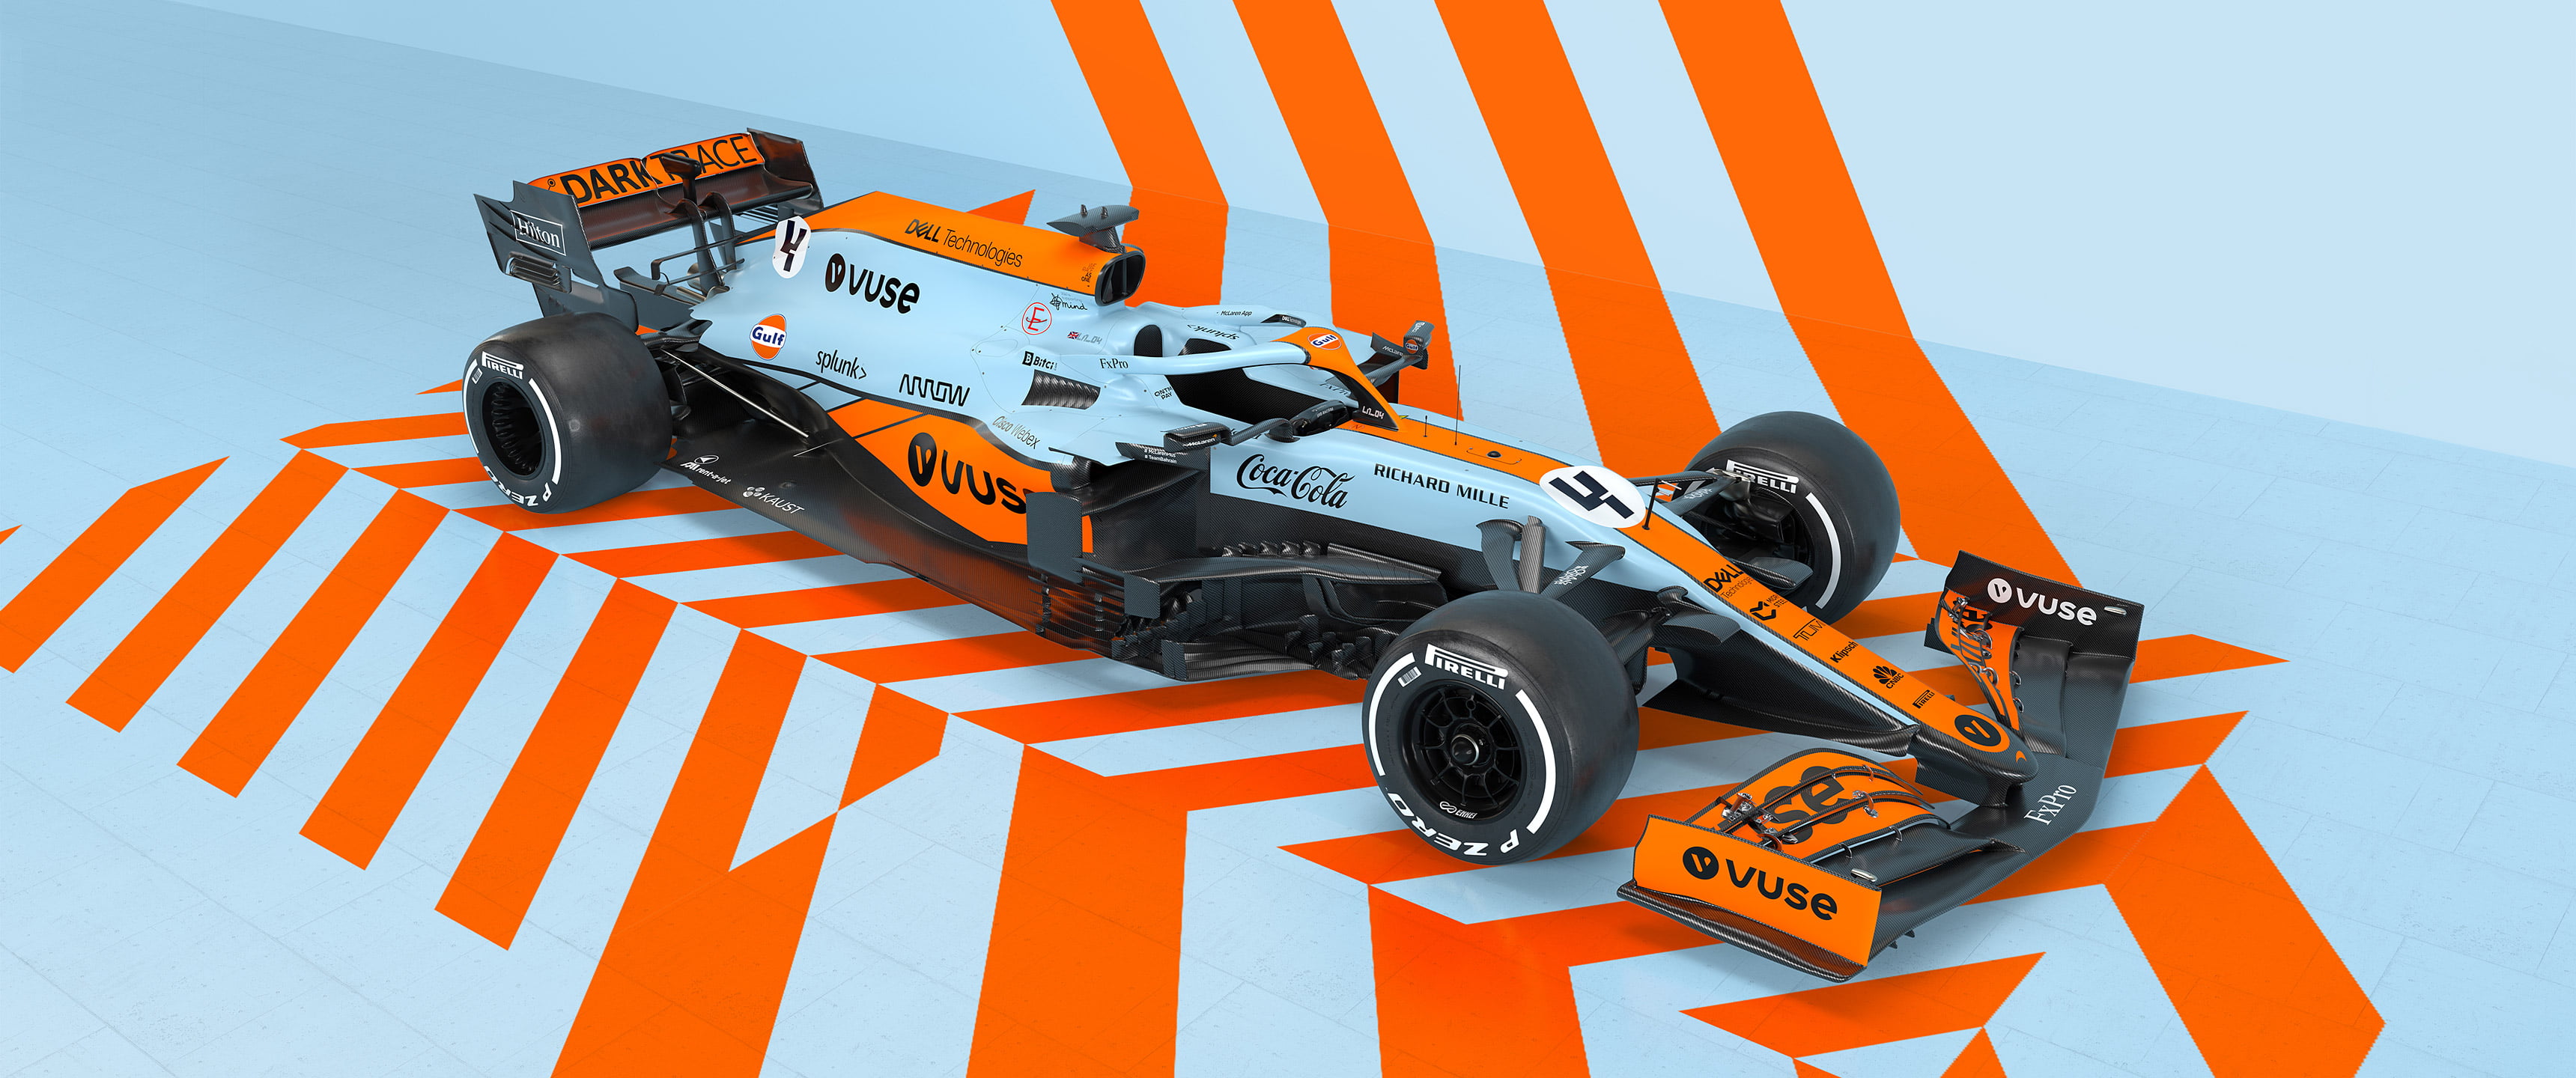 Formula 1, McLaren F1, McLaren Formula 1, race cars, Lando Norris